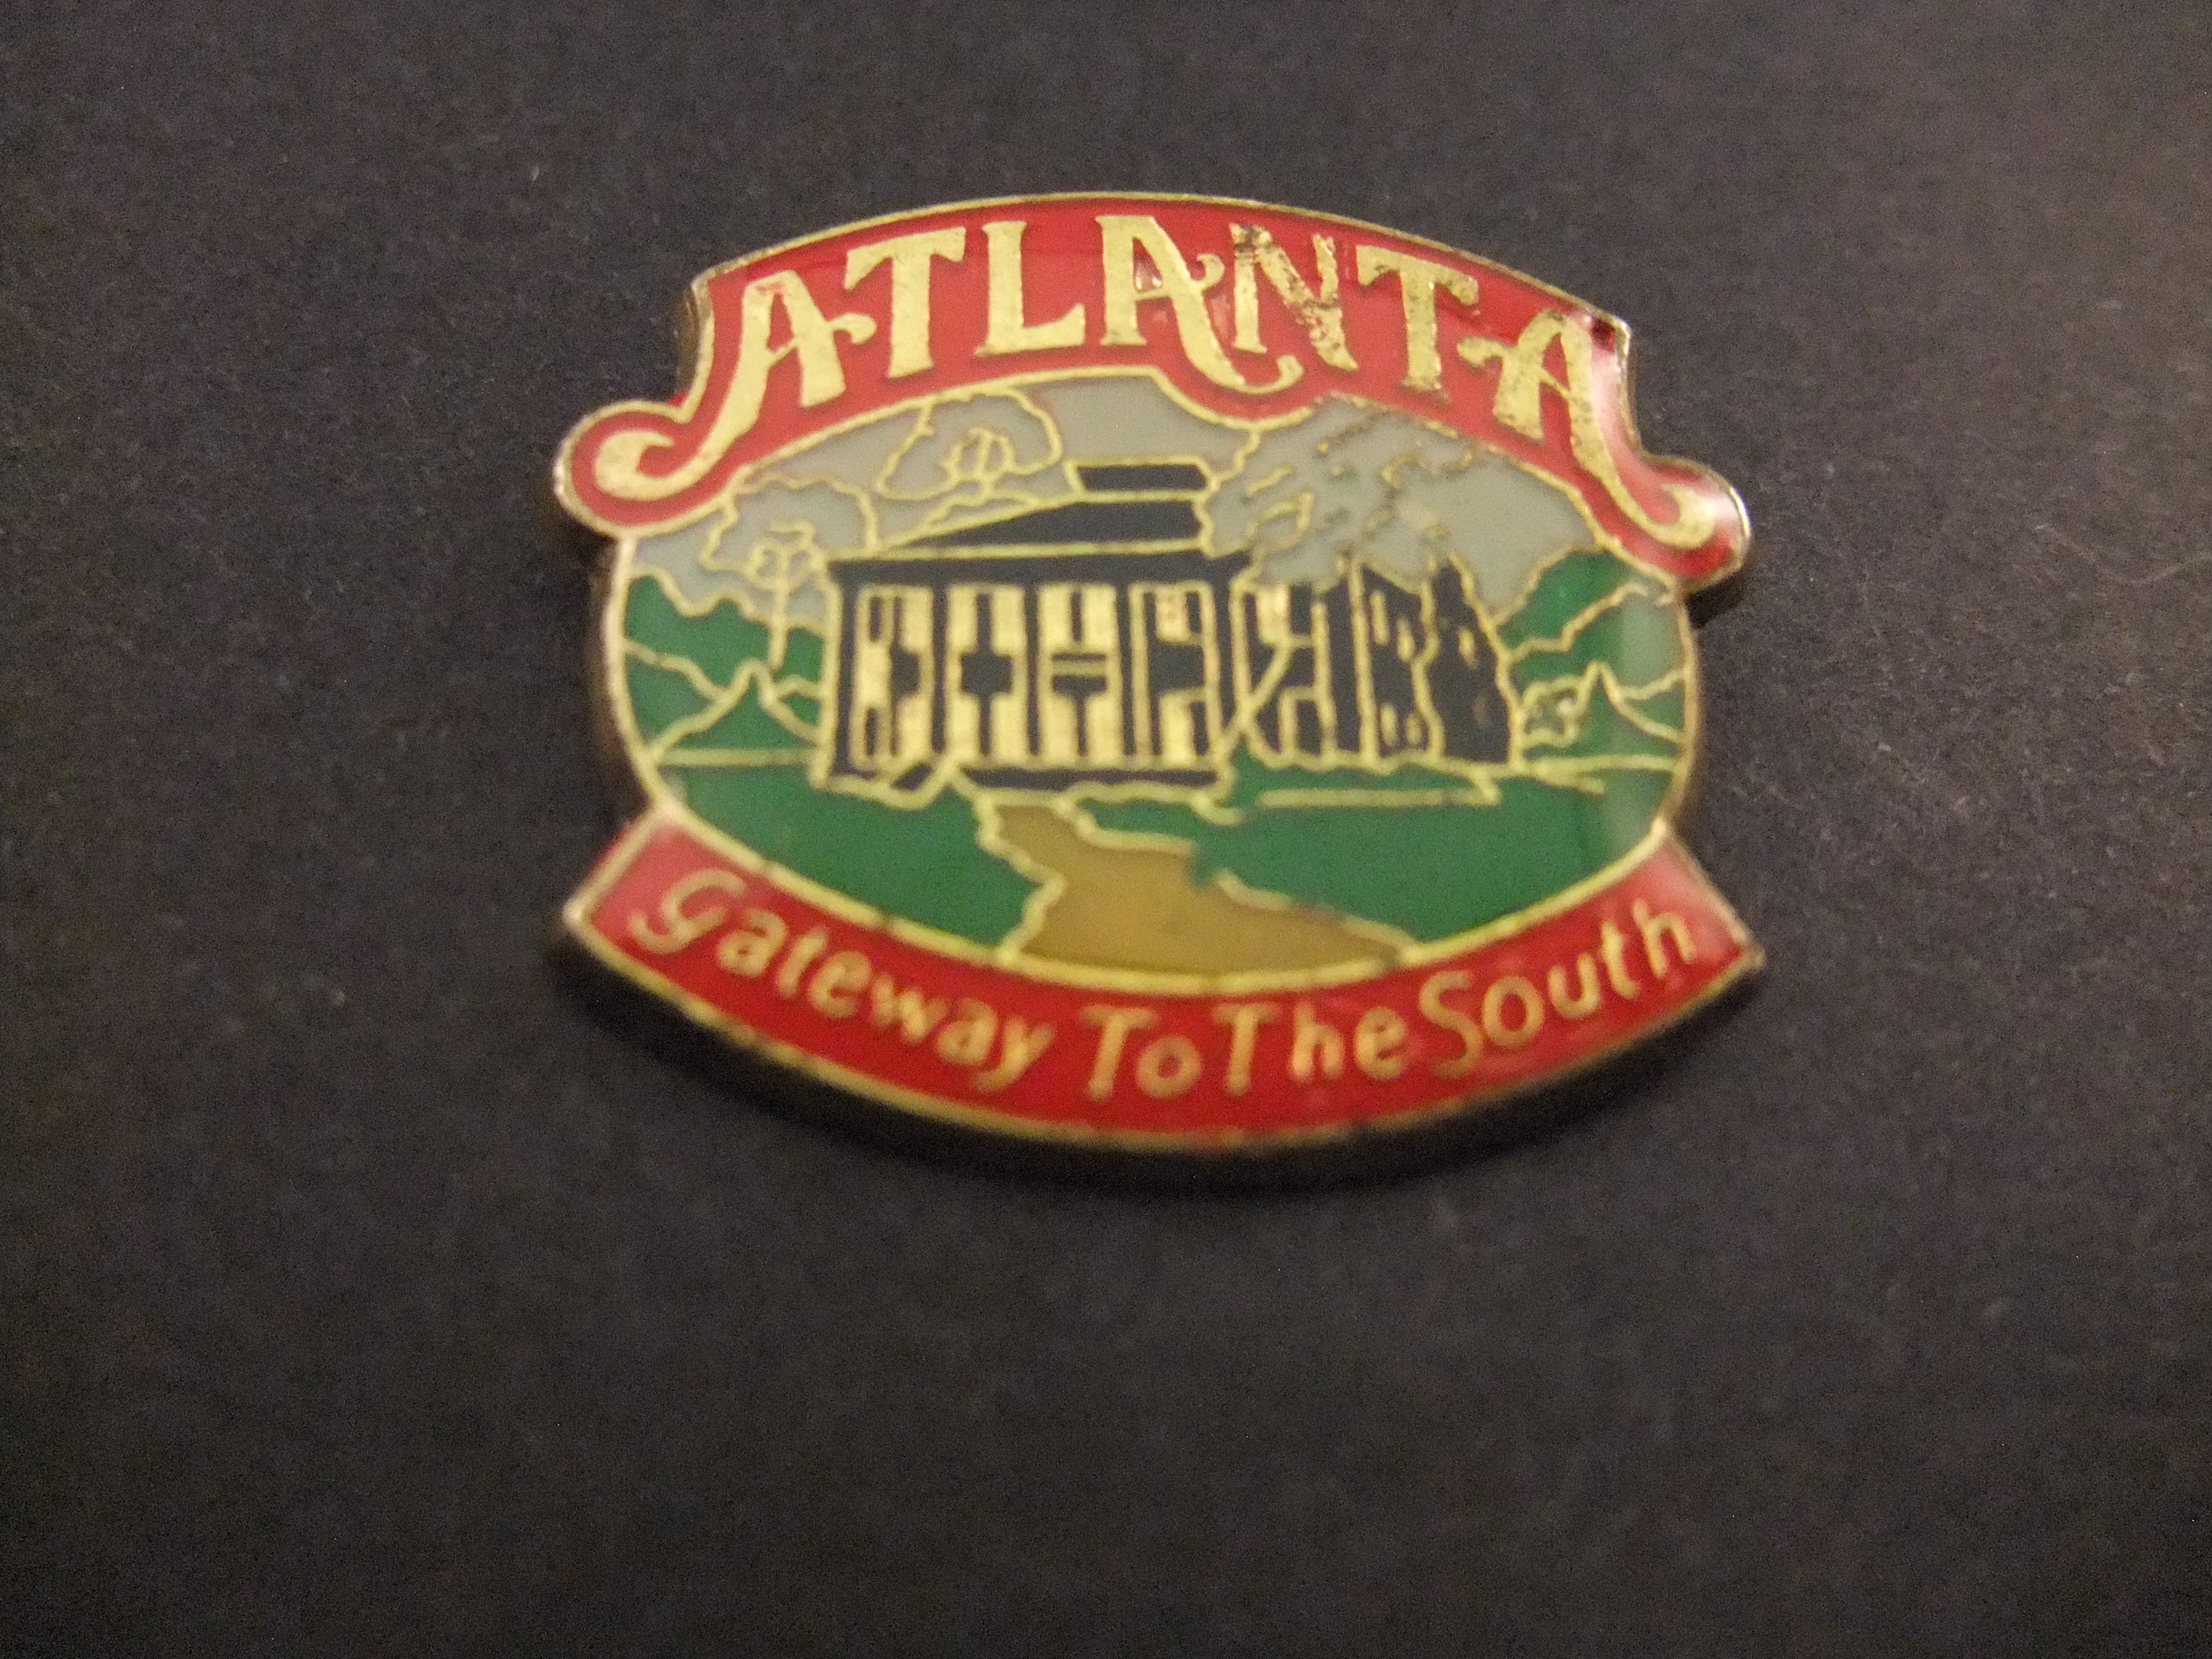 Atlanta Gateway to the South ( boek)